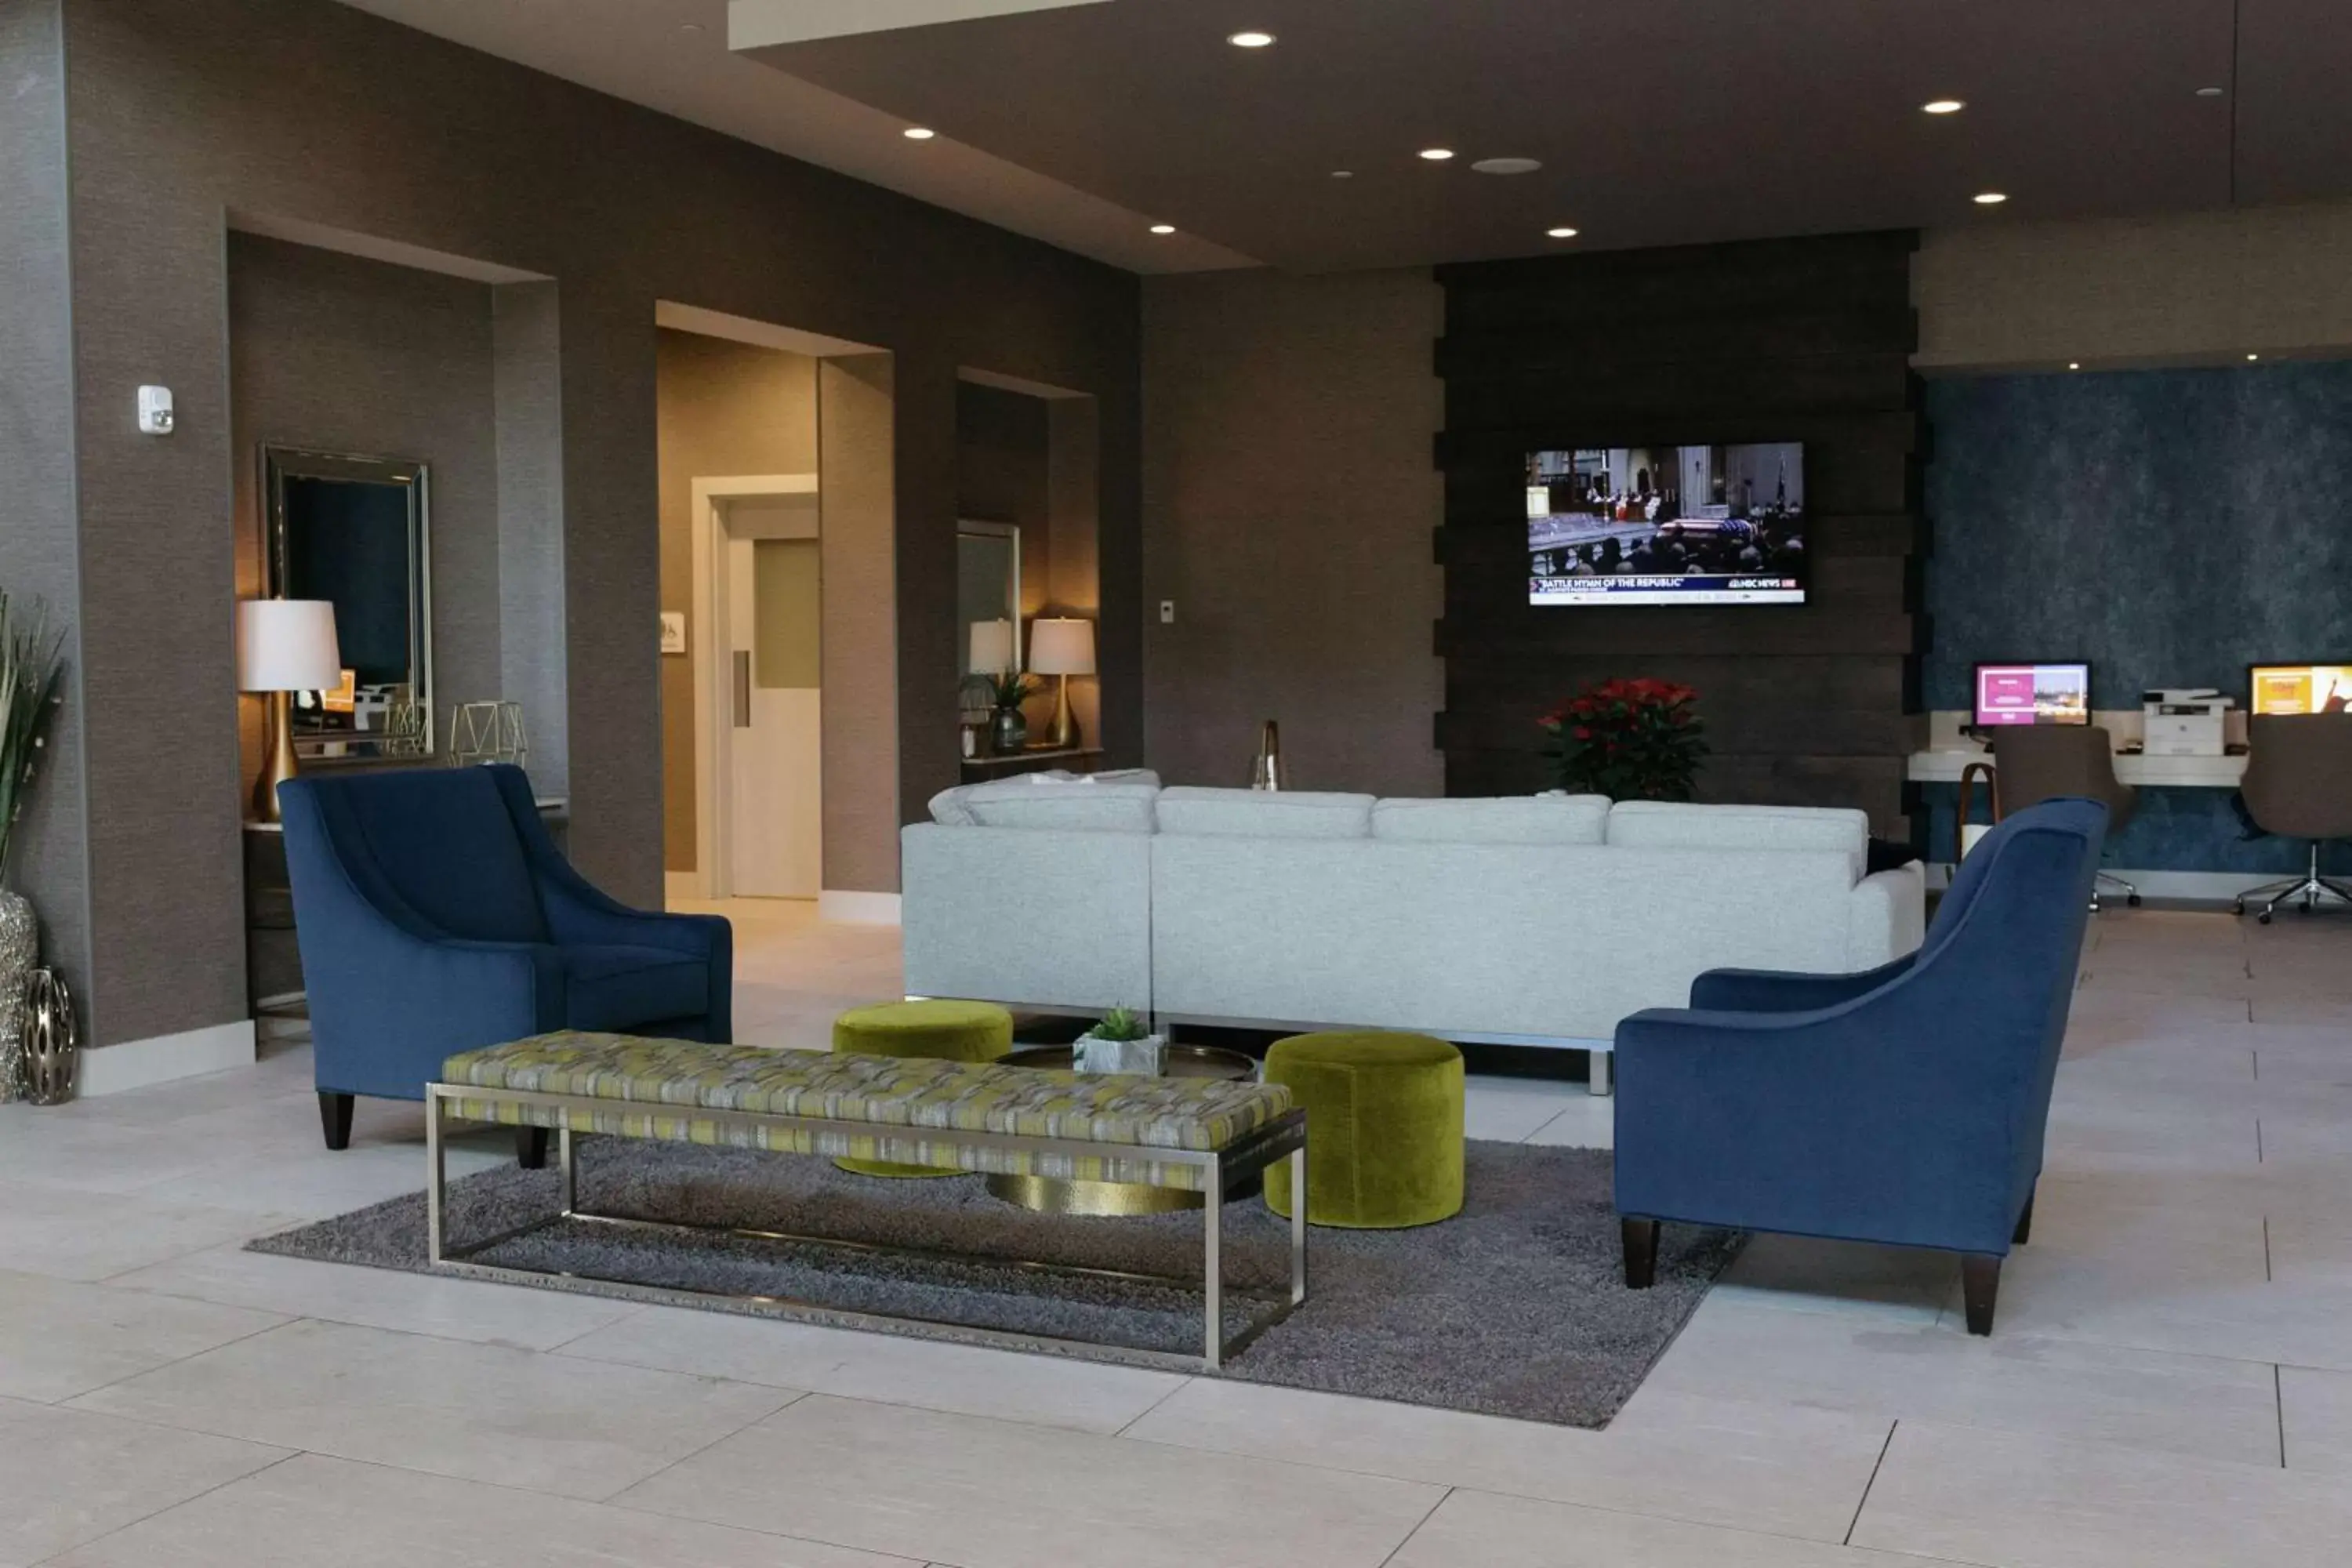 Lobby or reception, Lobby/Reception in Hilton Garden Inn Madison Sun Prairie